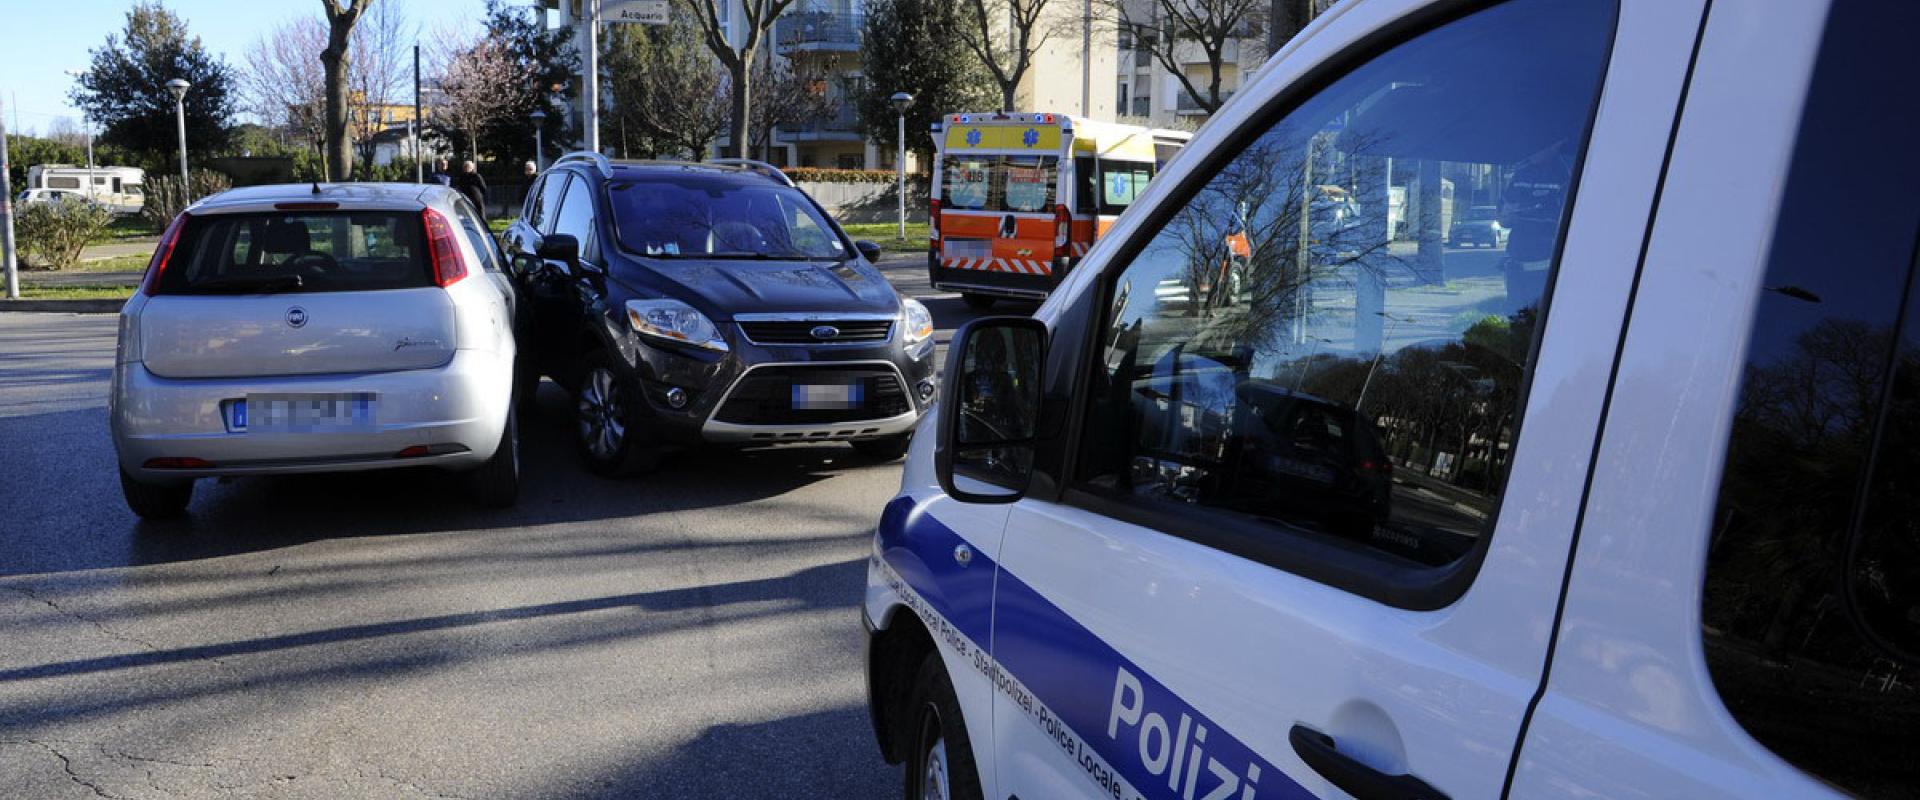 Veicolo attrezzato dell'infortunistica stradale della Polizia Municipale di Rimini